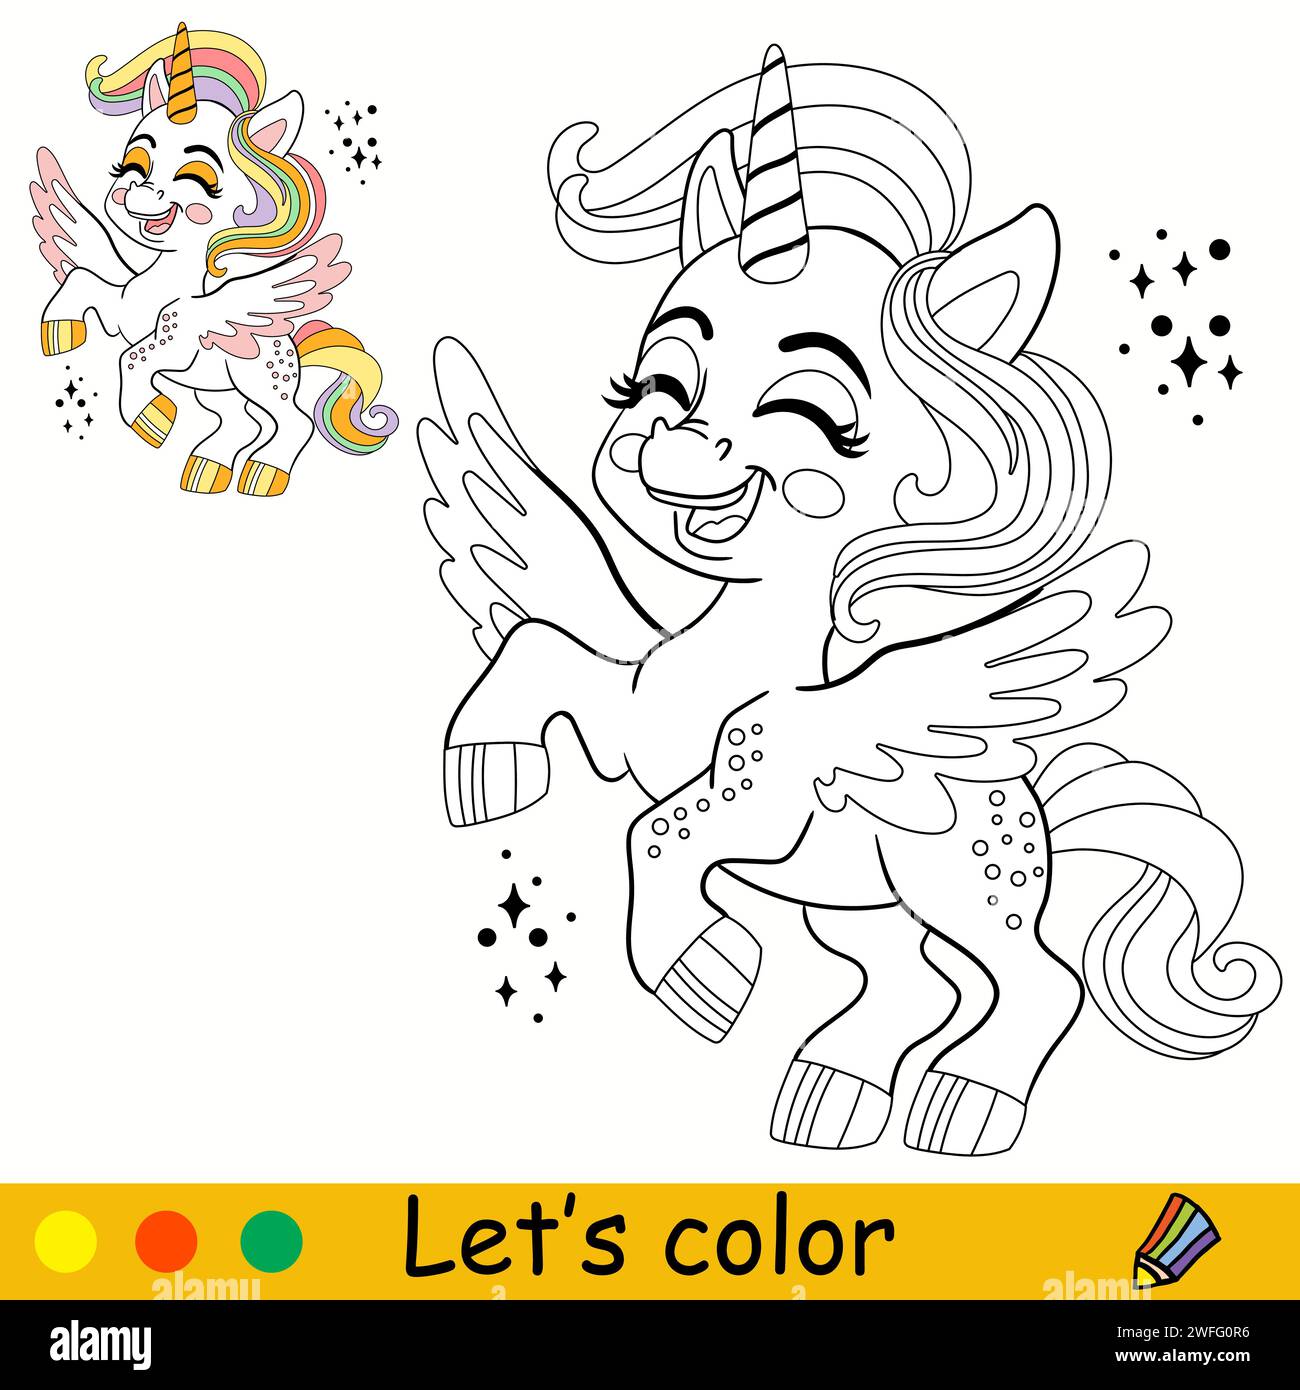 Cartoni animati, simpatico unicorno con ali. Pagina di libri da colorare per bambini. Unicorn. Contorno nero su bianco. Illustrazione vettoriale isolata con colorazione Illustrazione Vettoriale